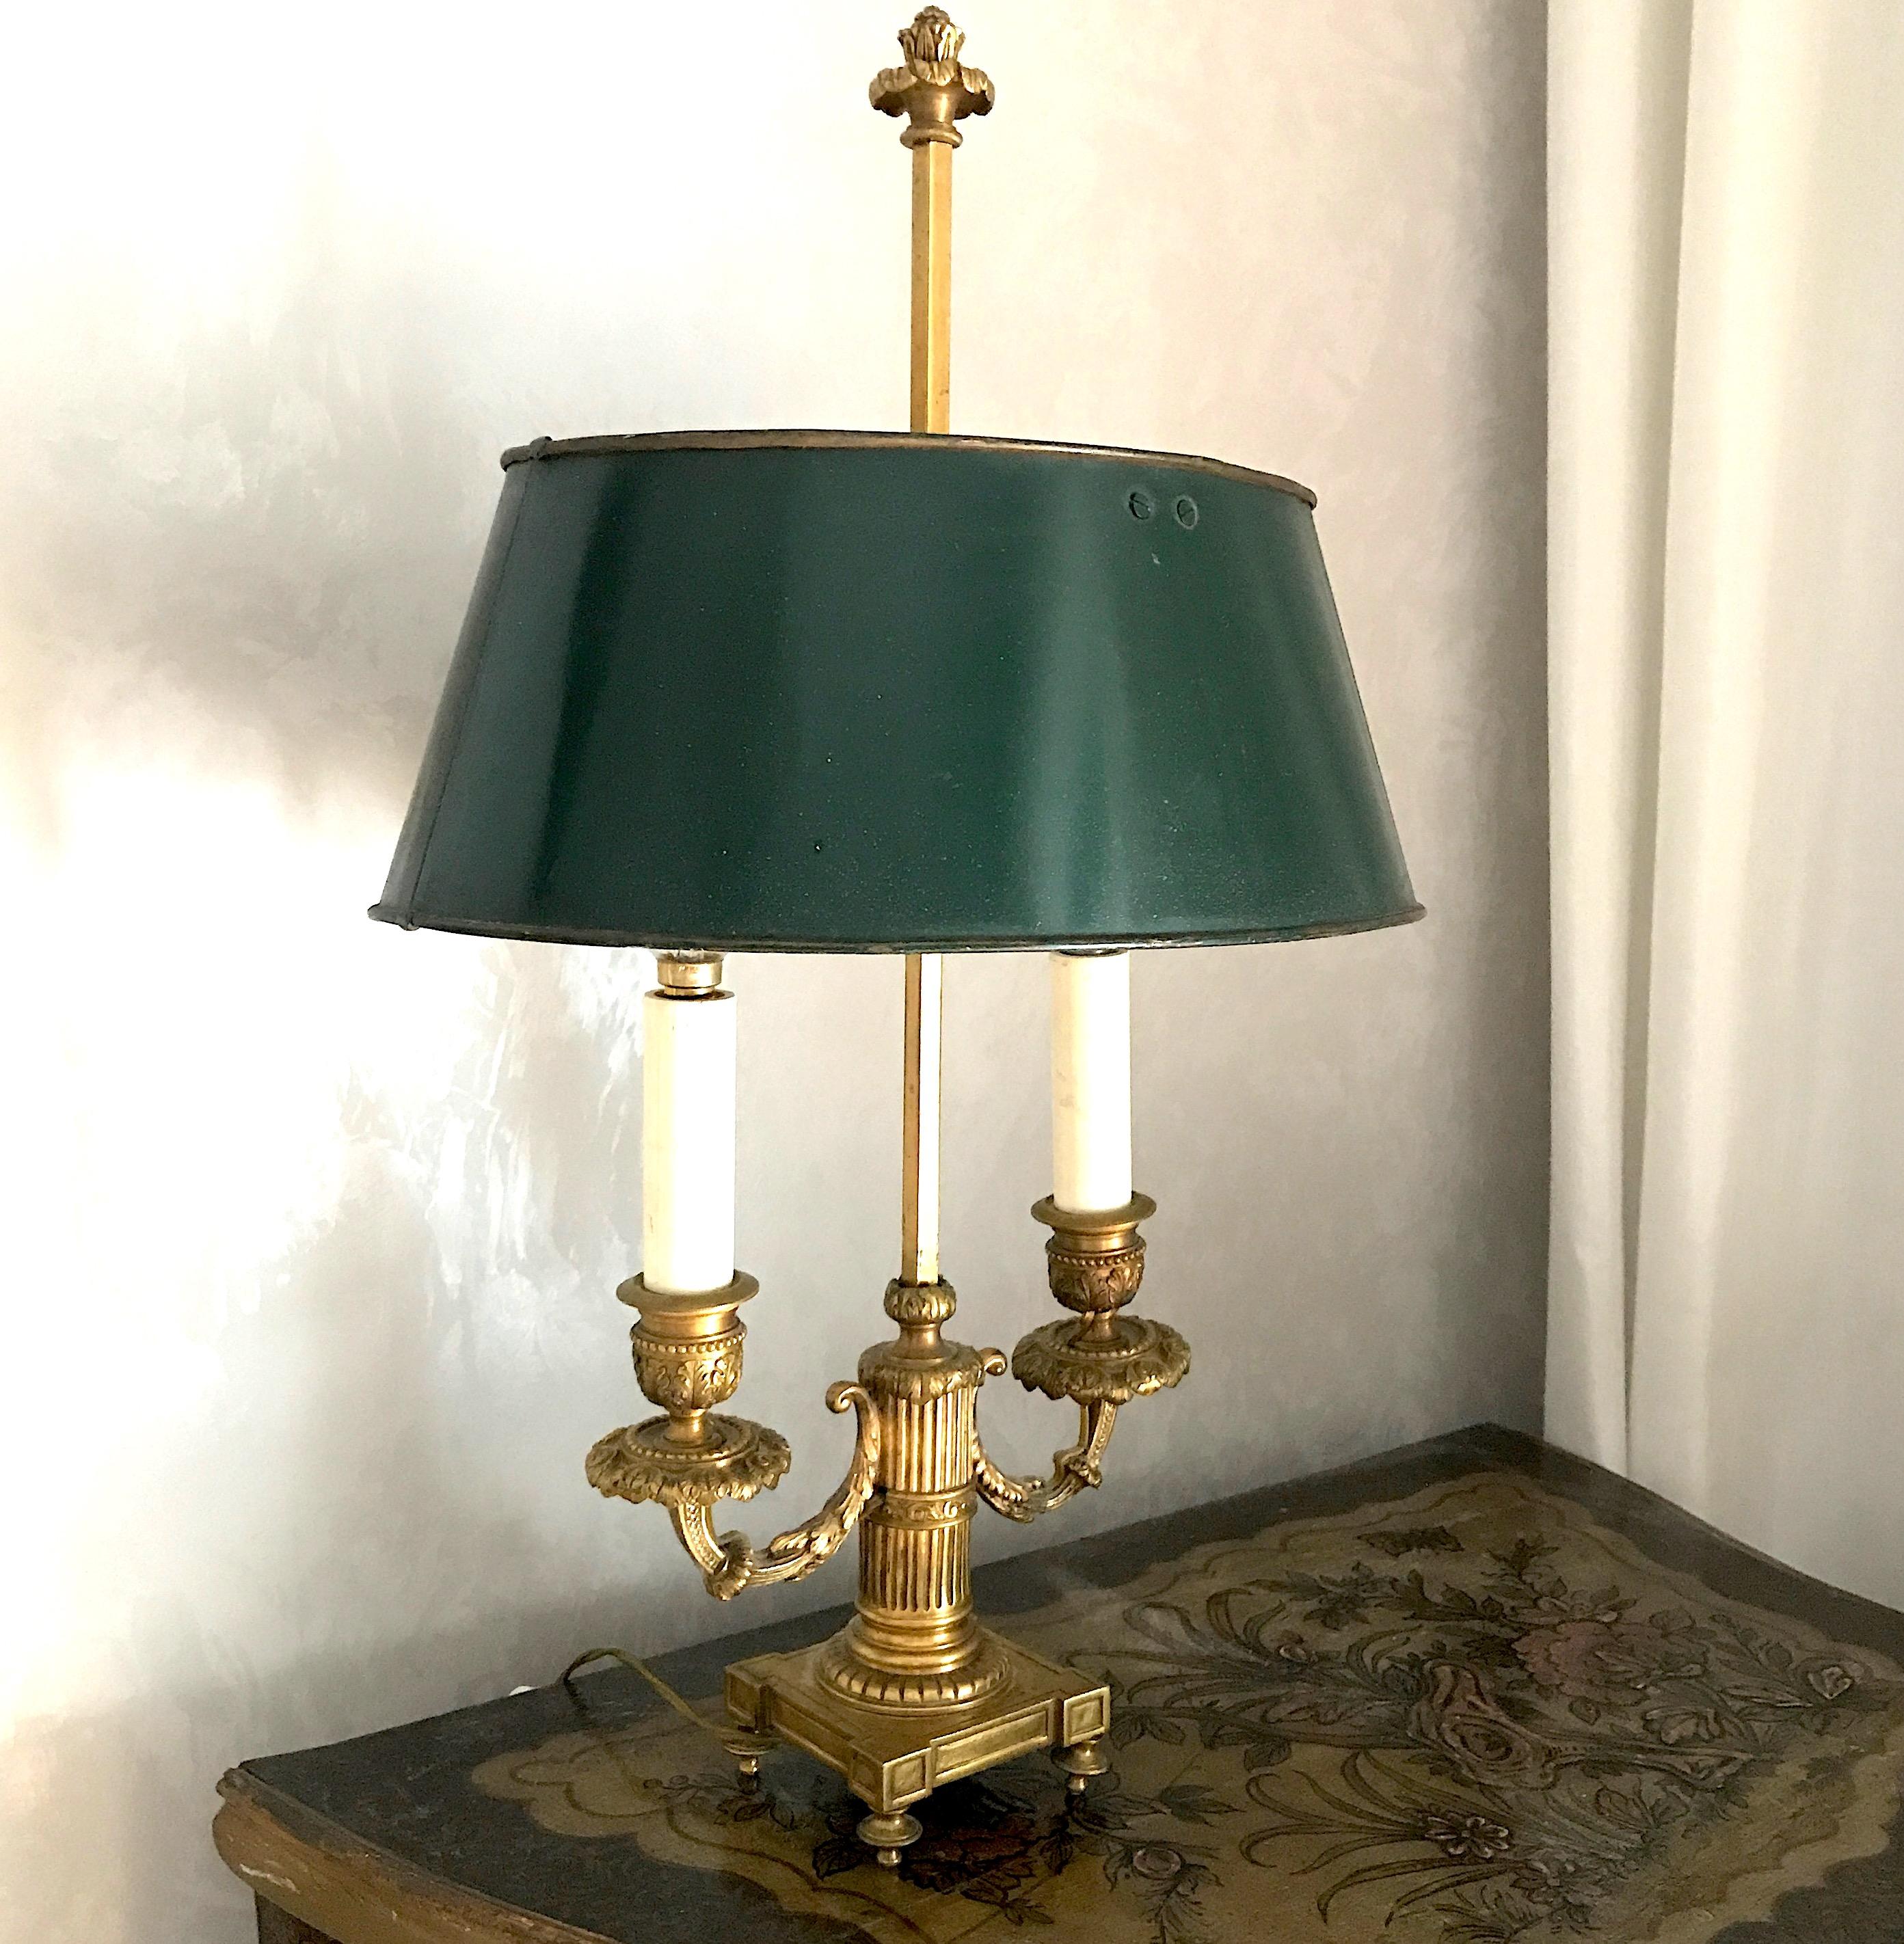 Elegante Empire-Lampen aus vergoldeter Bronze, fein ziseliert, mit verstellbarem, dunkelgrün lackiertem Schirm aus Zinn.
Zwei Glühbirnen E 14.
Wir können verkabelt nach US-Standard liefern.
  
 